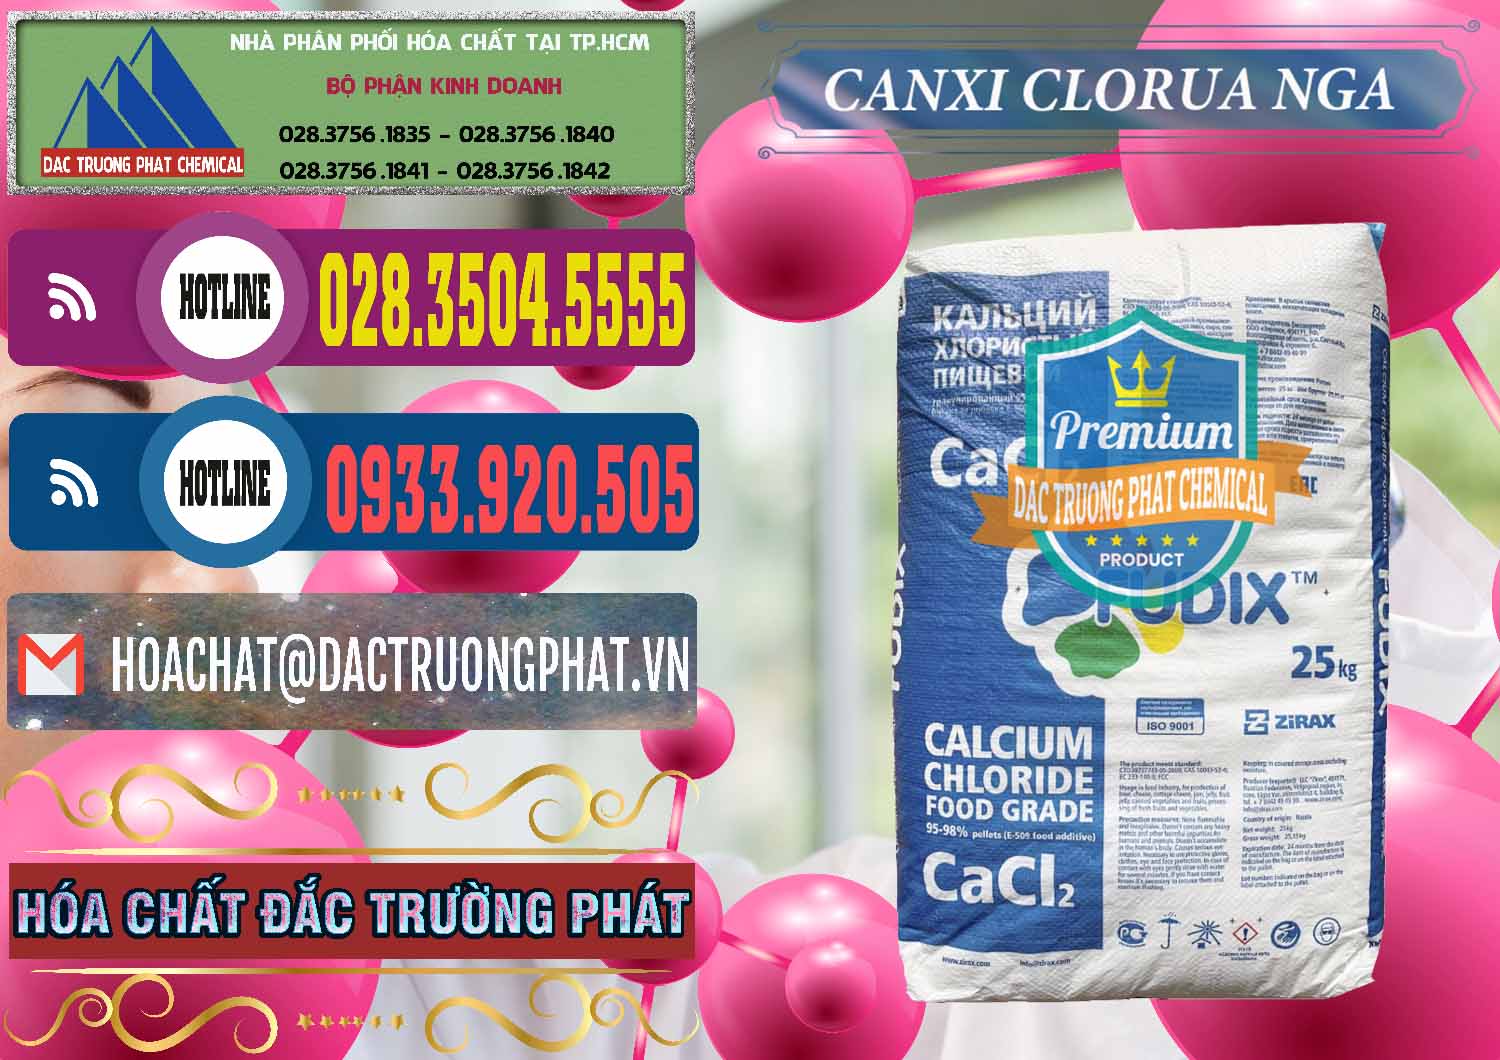 Nơi cung ứng _ bán CaCl2 – Canxi Clorua Nga Russia - 0430 - Công ty chuyên bán và cung cấp hóa chất tại TP.HCM - muabanhoachat.com.vn